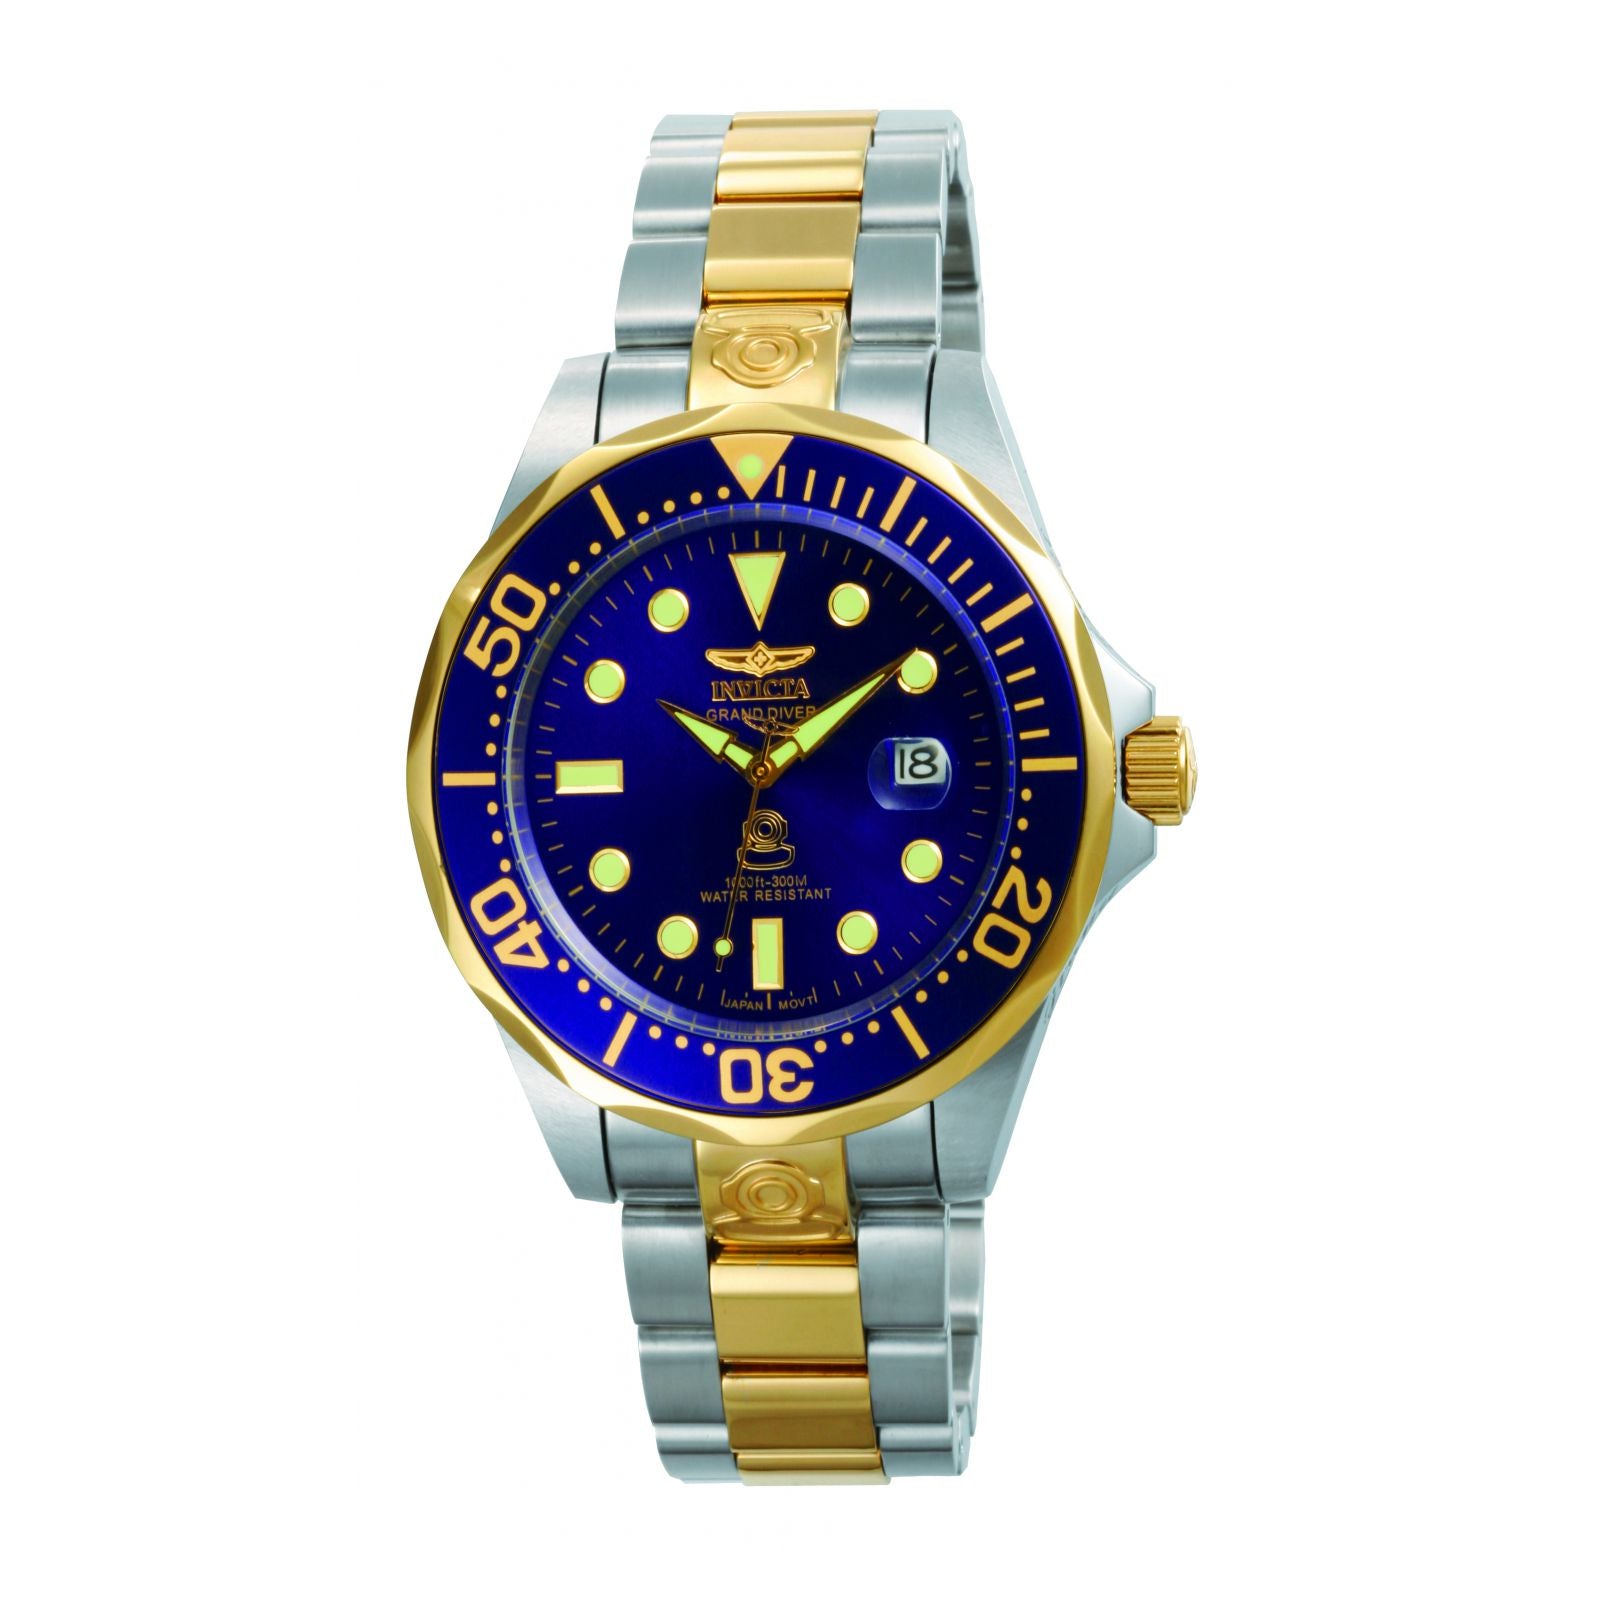 Relojes en promoción: Modelos Invicta Desde $299.900